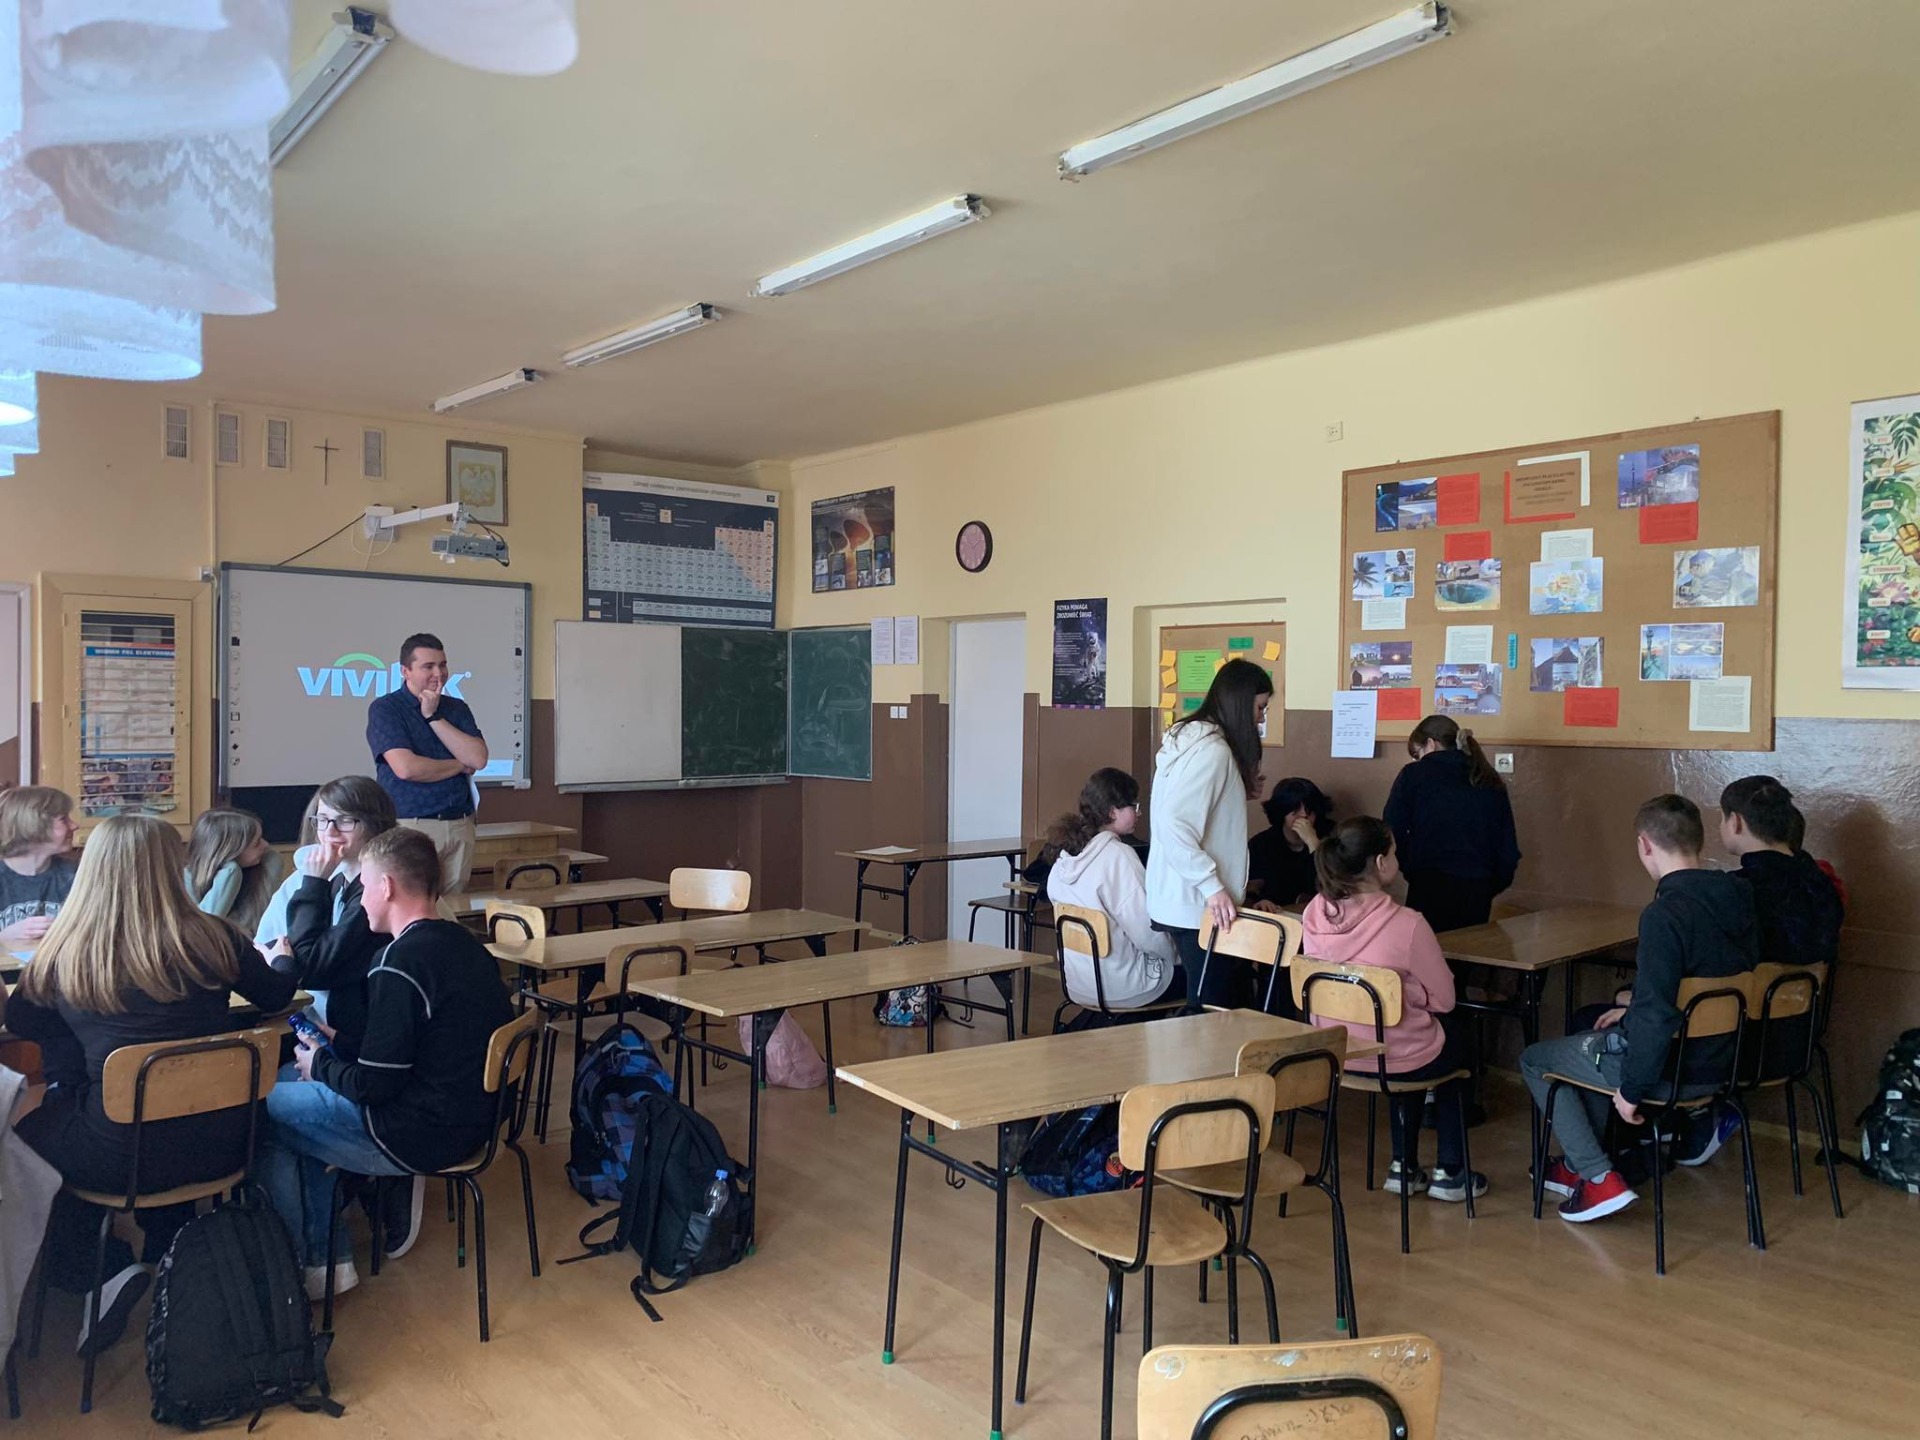 Uczniowie w sali lekcyjnej biorą udział w projekcie "Być jak Ignacy"